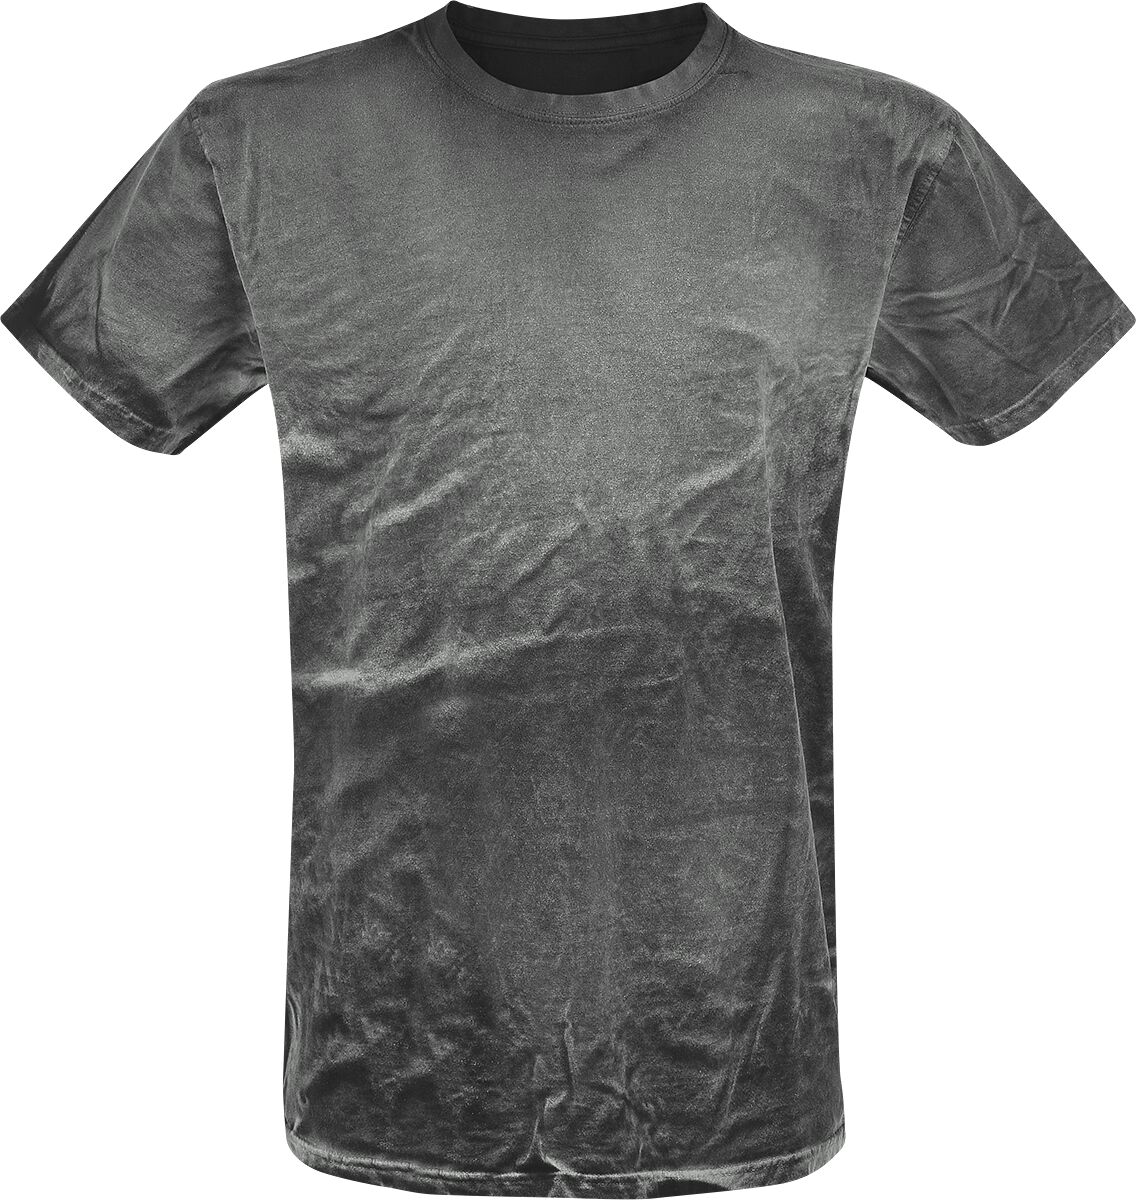 Outer Vision T-Shirt - Spray Washed Black Shirt - S bis 3XL - für Männer - Größe L - grau von Outer Vision